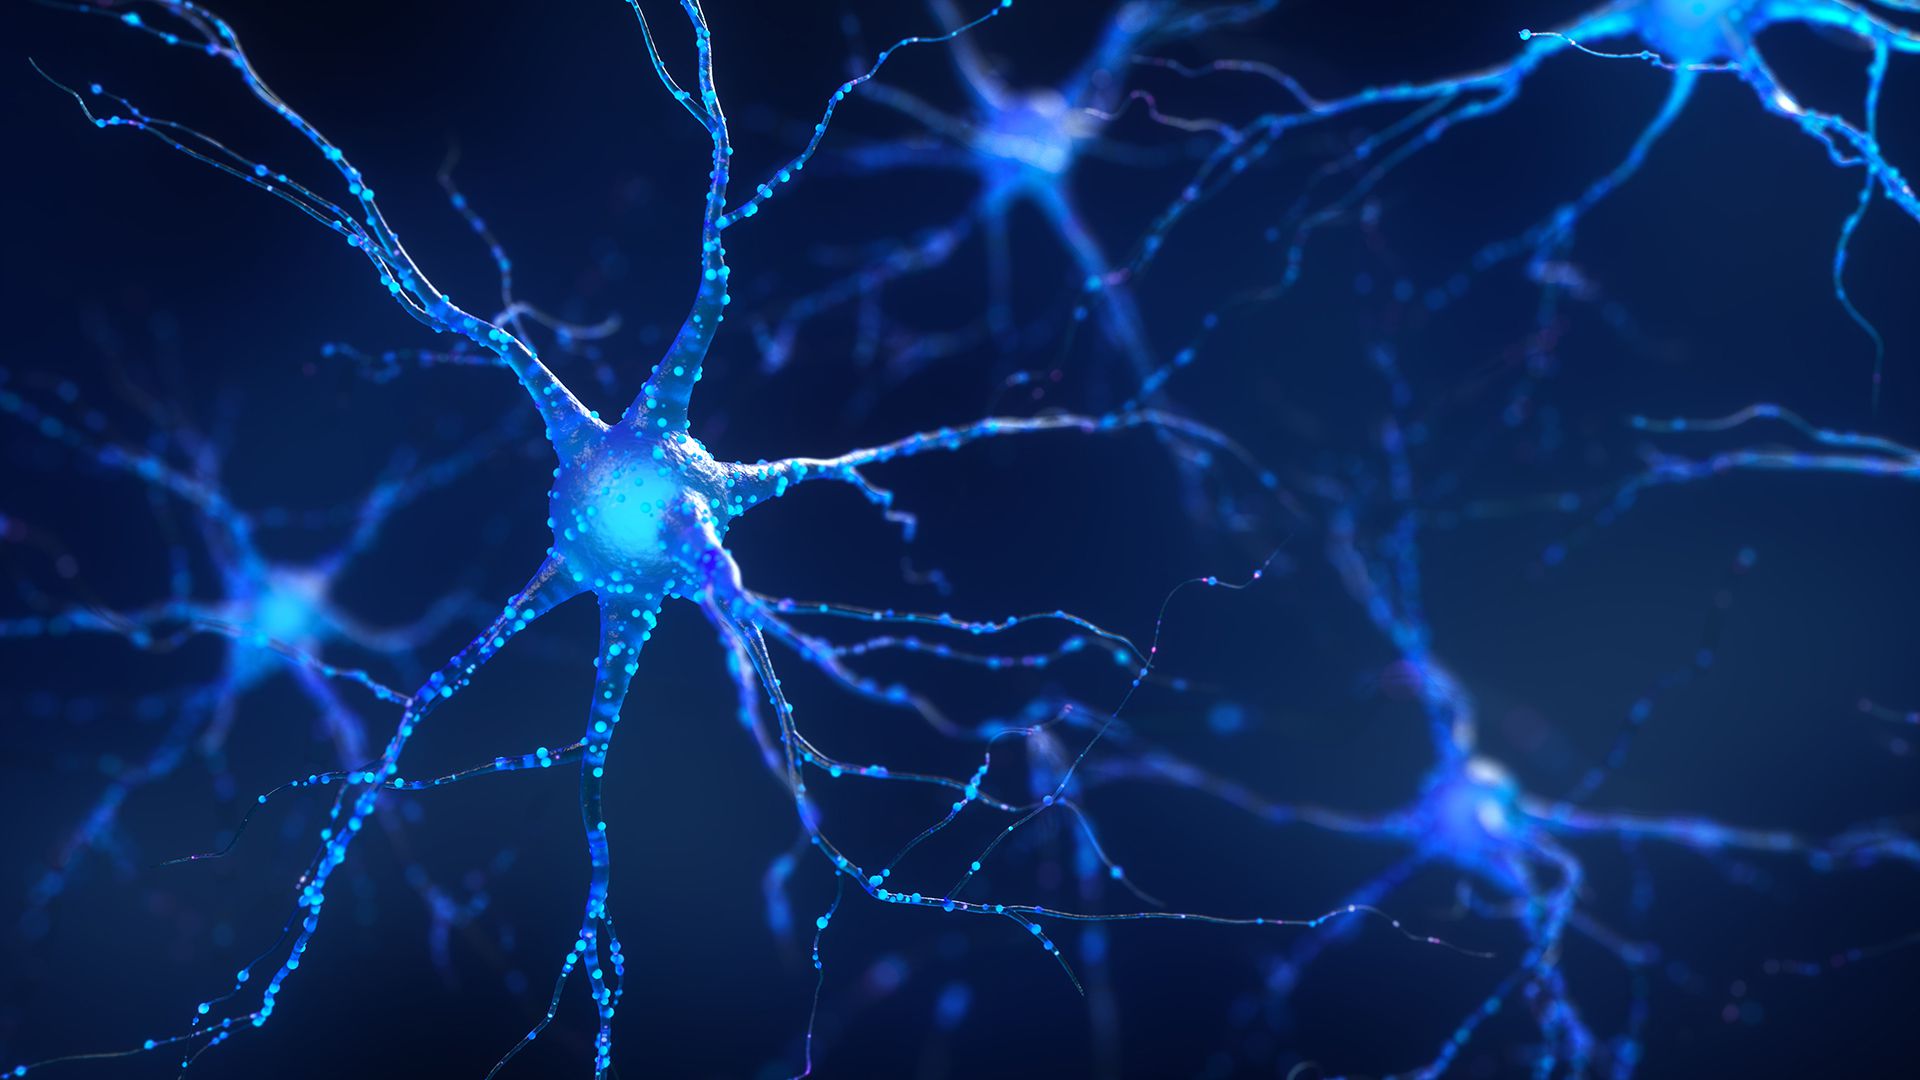 La plasticidad cerebral hace al cerebro increíblemente adaptable y capaz de reorganizarse en respuesta a nuevas experiencias y aprendizaje (Getty Images)